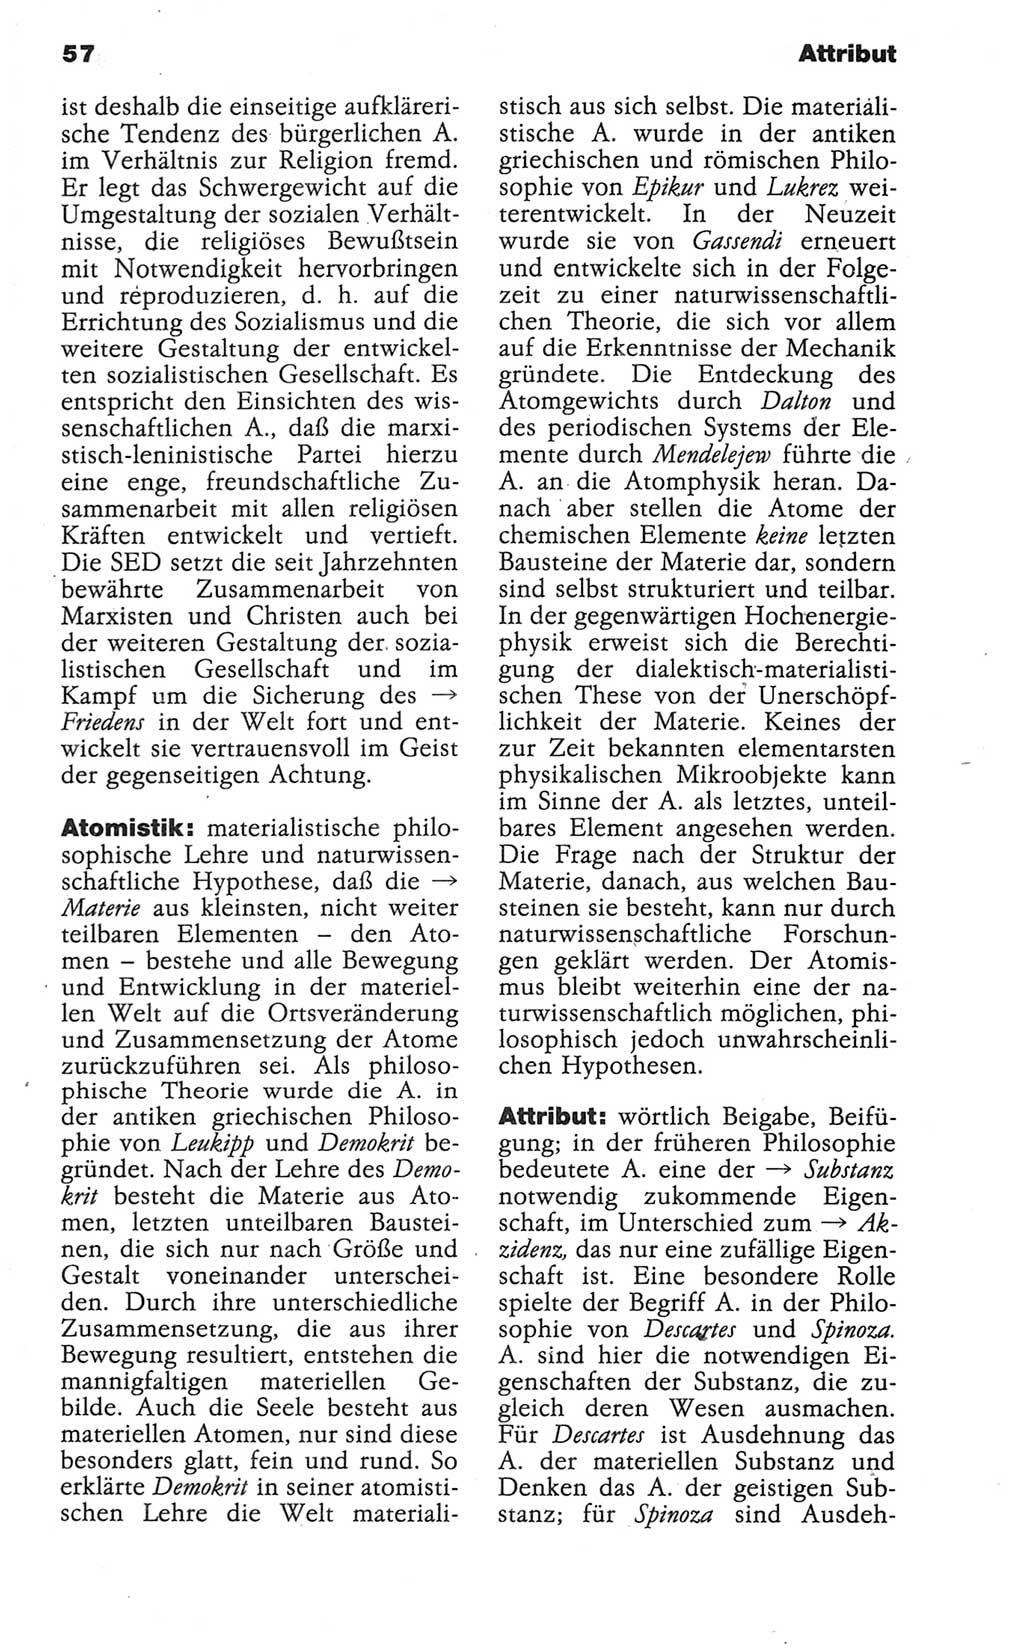 Wörterbuch der marxistisch-leninistischen Philosophie [Deutsche Demokratische Republik (DDR)] 1986, Seite 57 (Wb. ML Phil. DDR 1986, S. 57)